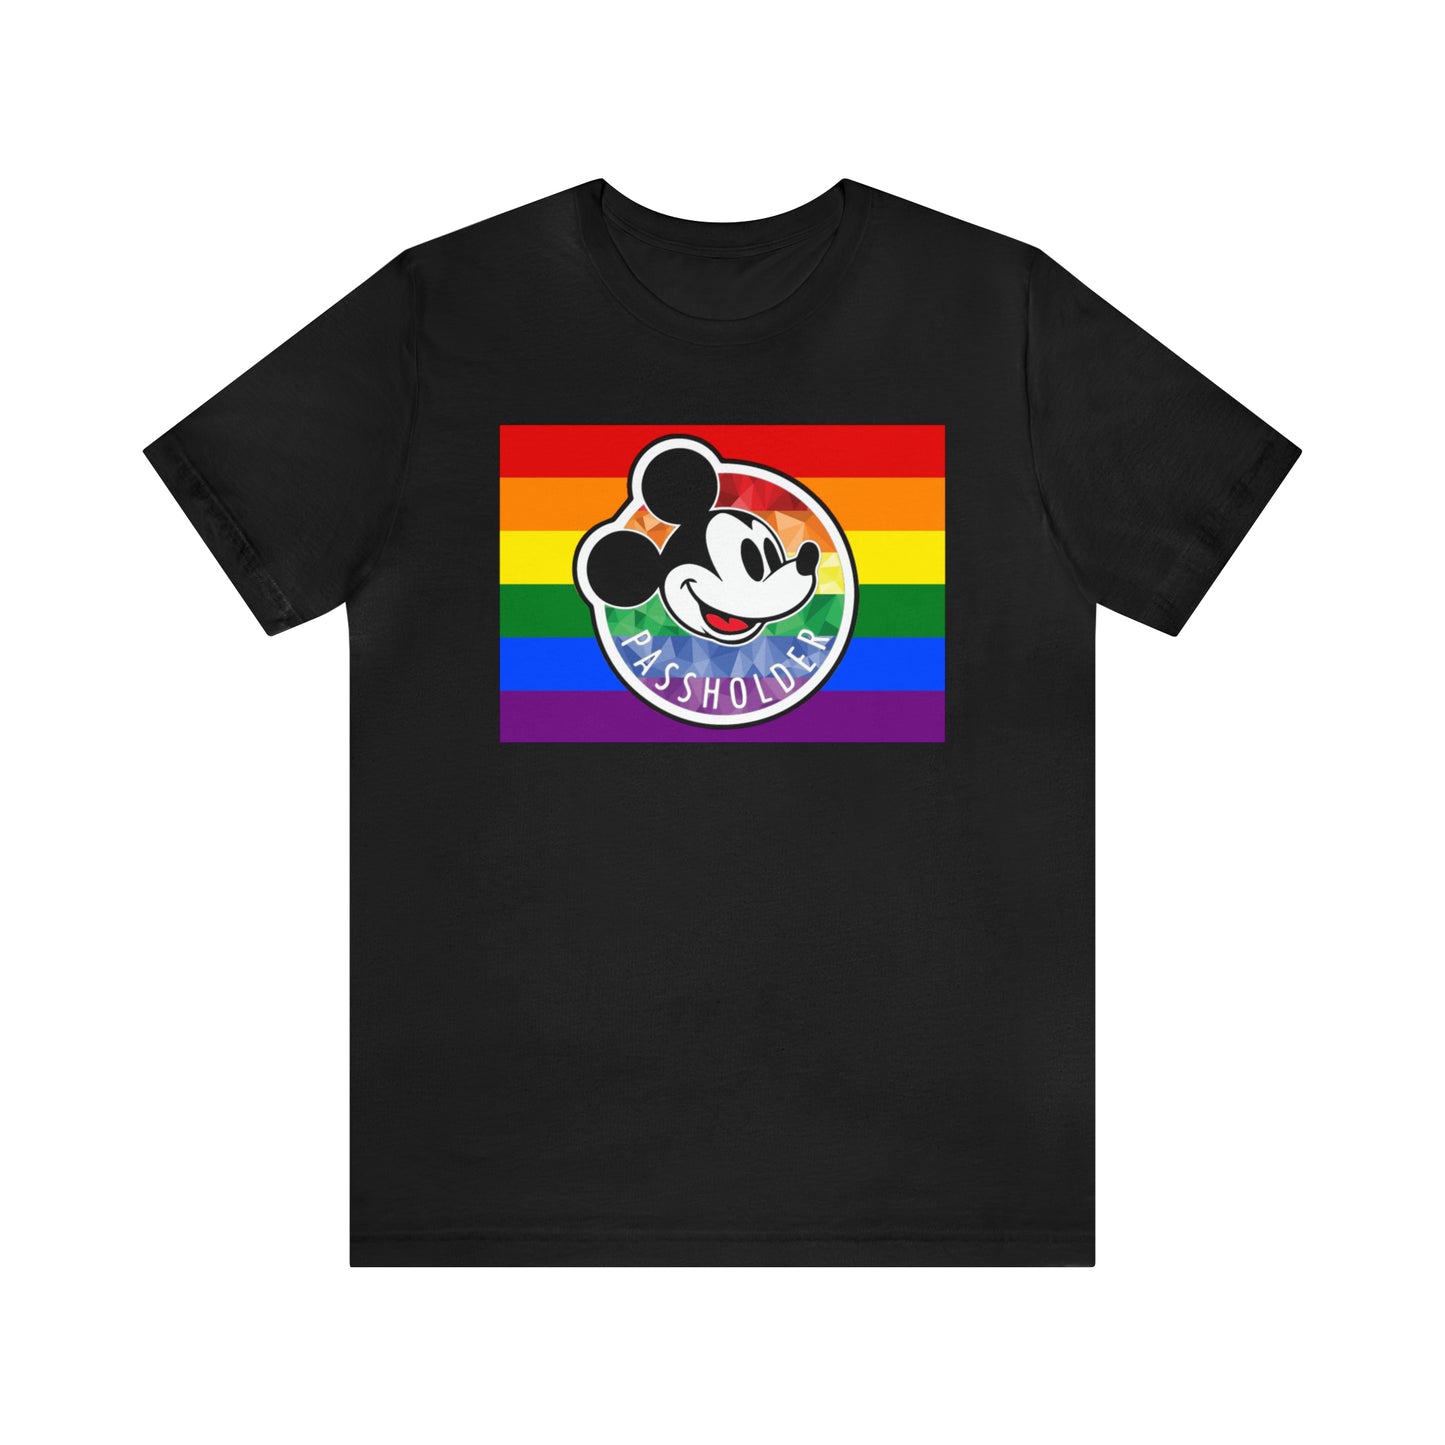 Camiseta unisex de manga corta Rainbow Pride Annual Passholder